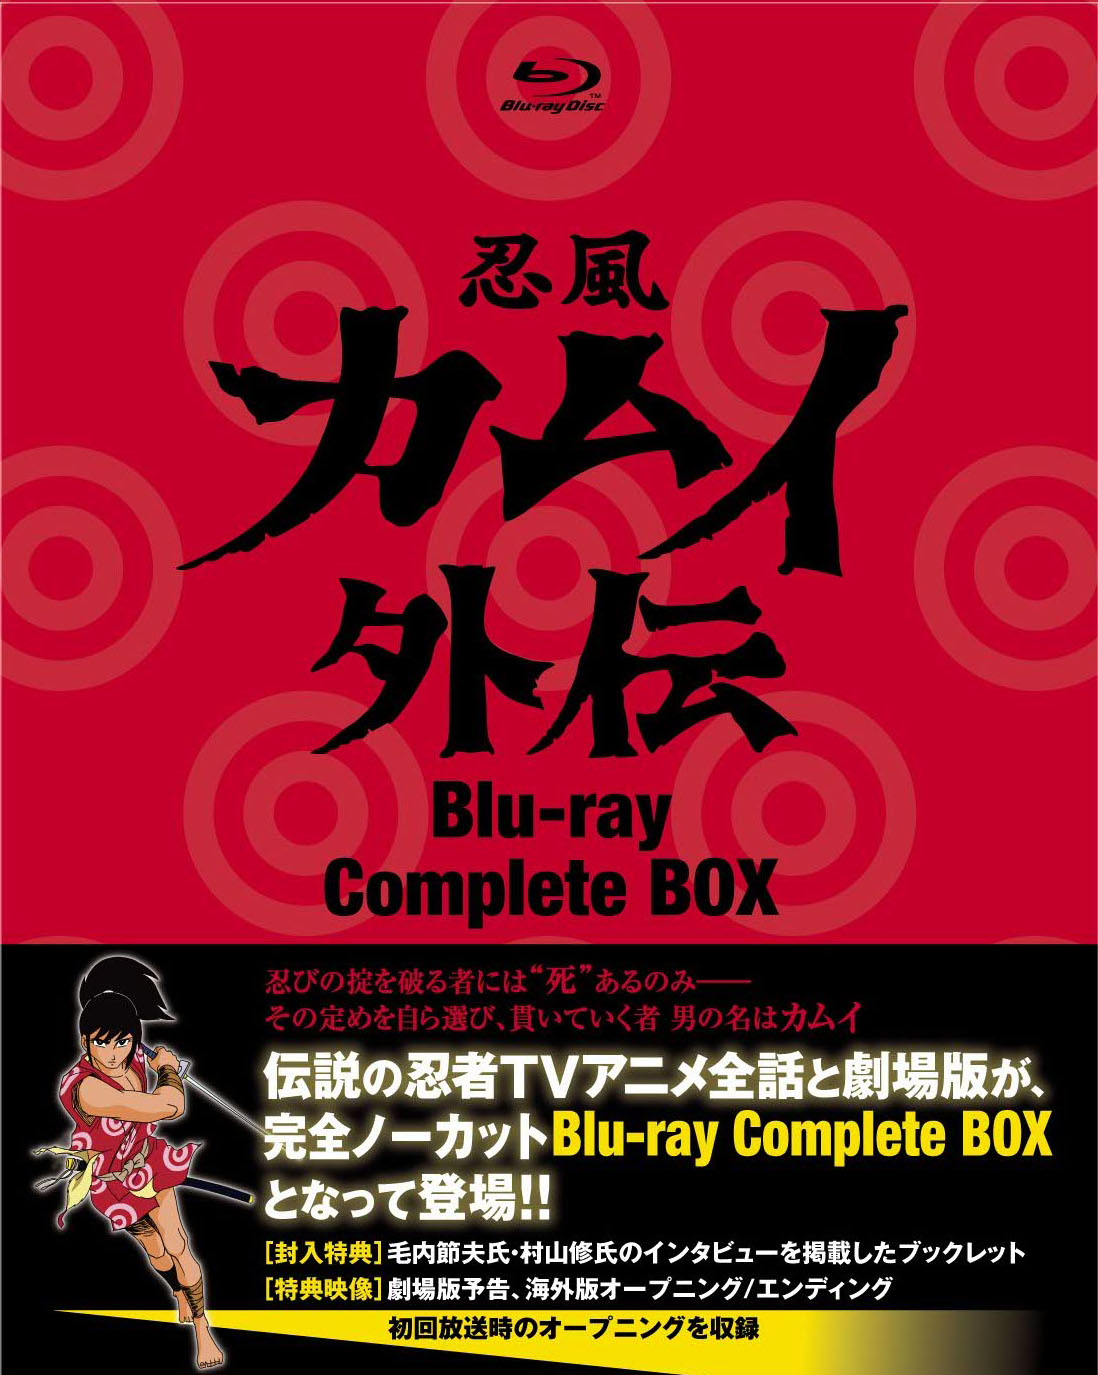 伝説の忍者アクションアニメ 忍風カムイ外伝 Tvシリーズ全話と劇場版が完全ノーカット Blu Ray Complete Boxとなって2月17日発売 株式会社スーパー ビジョンのプレスリリース